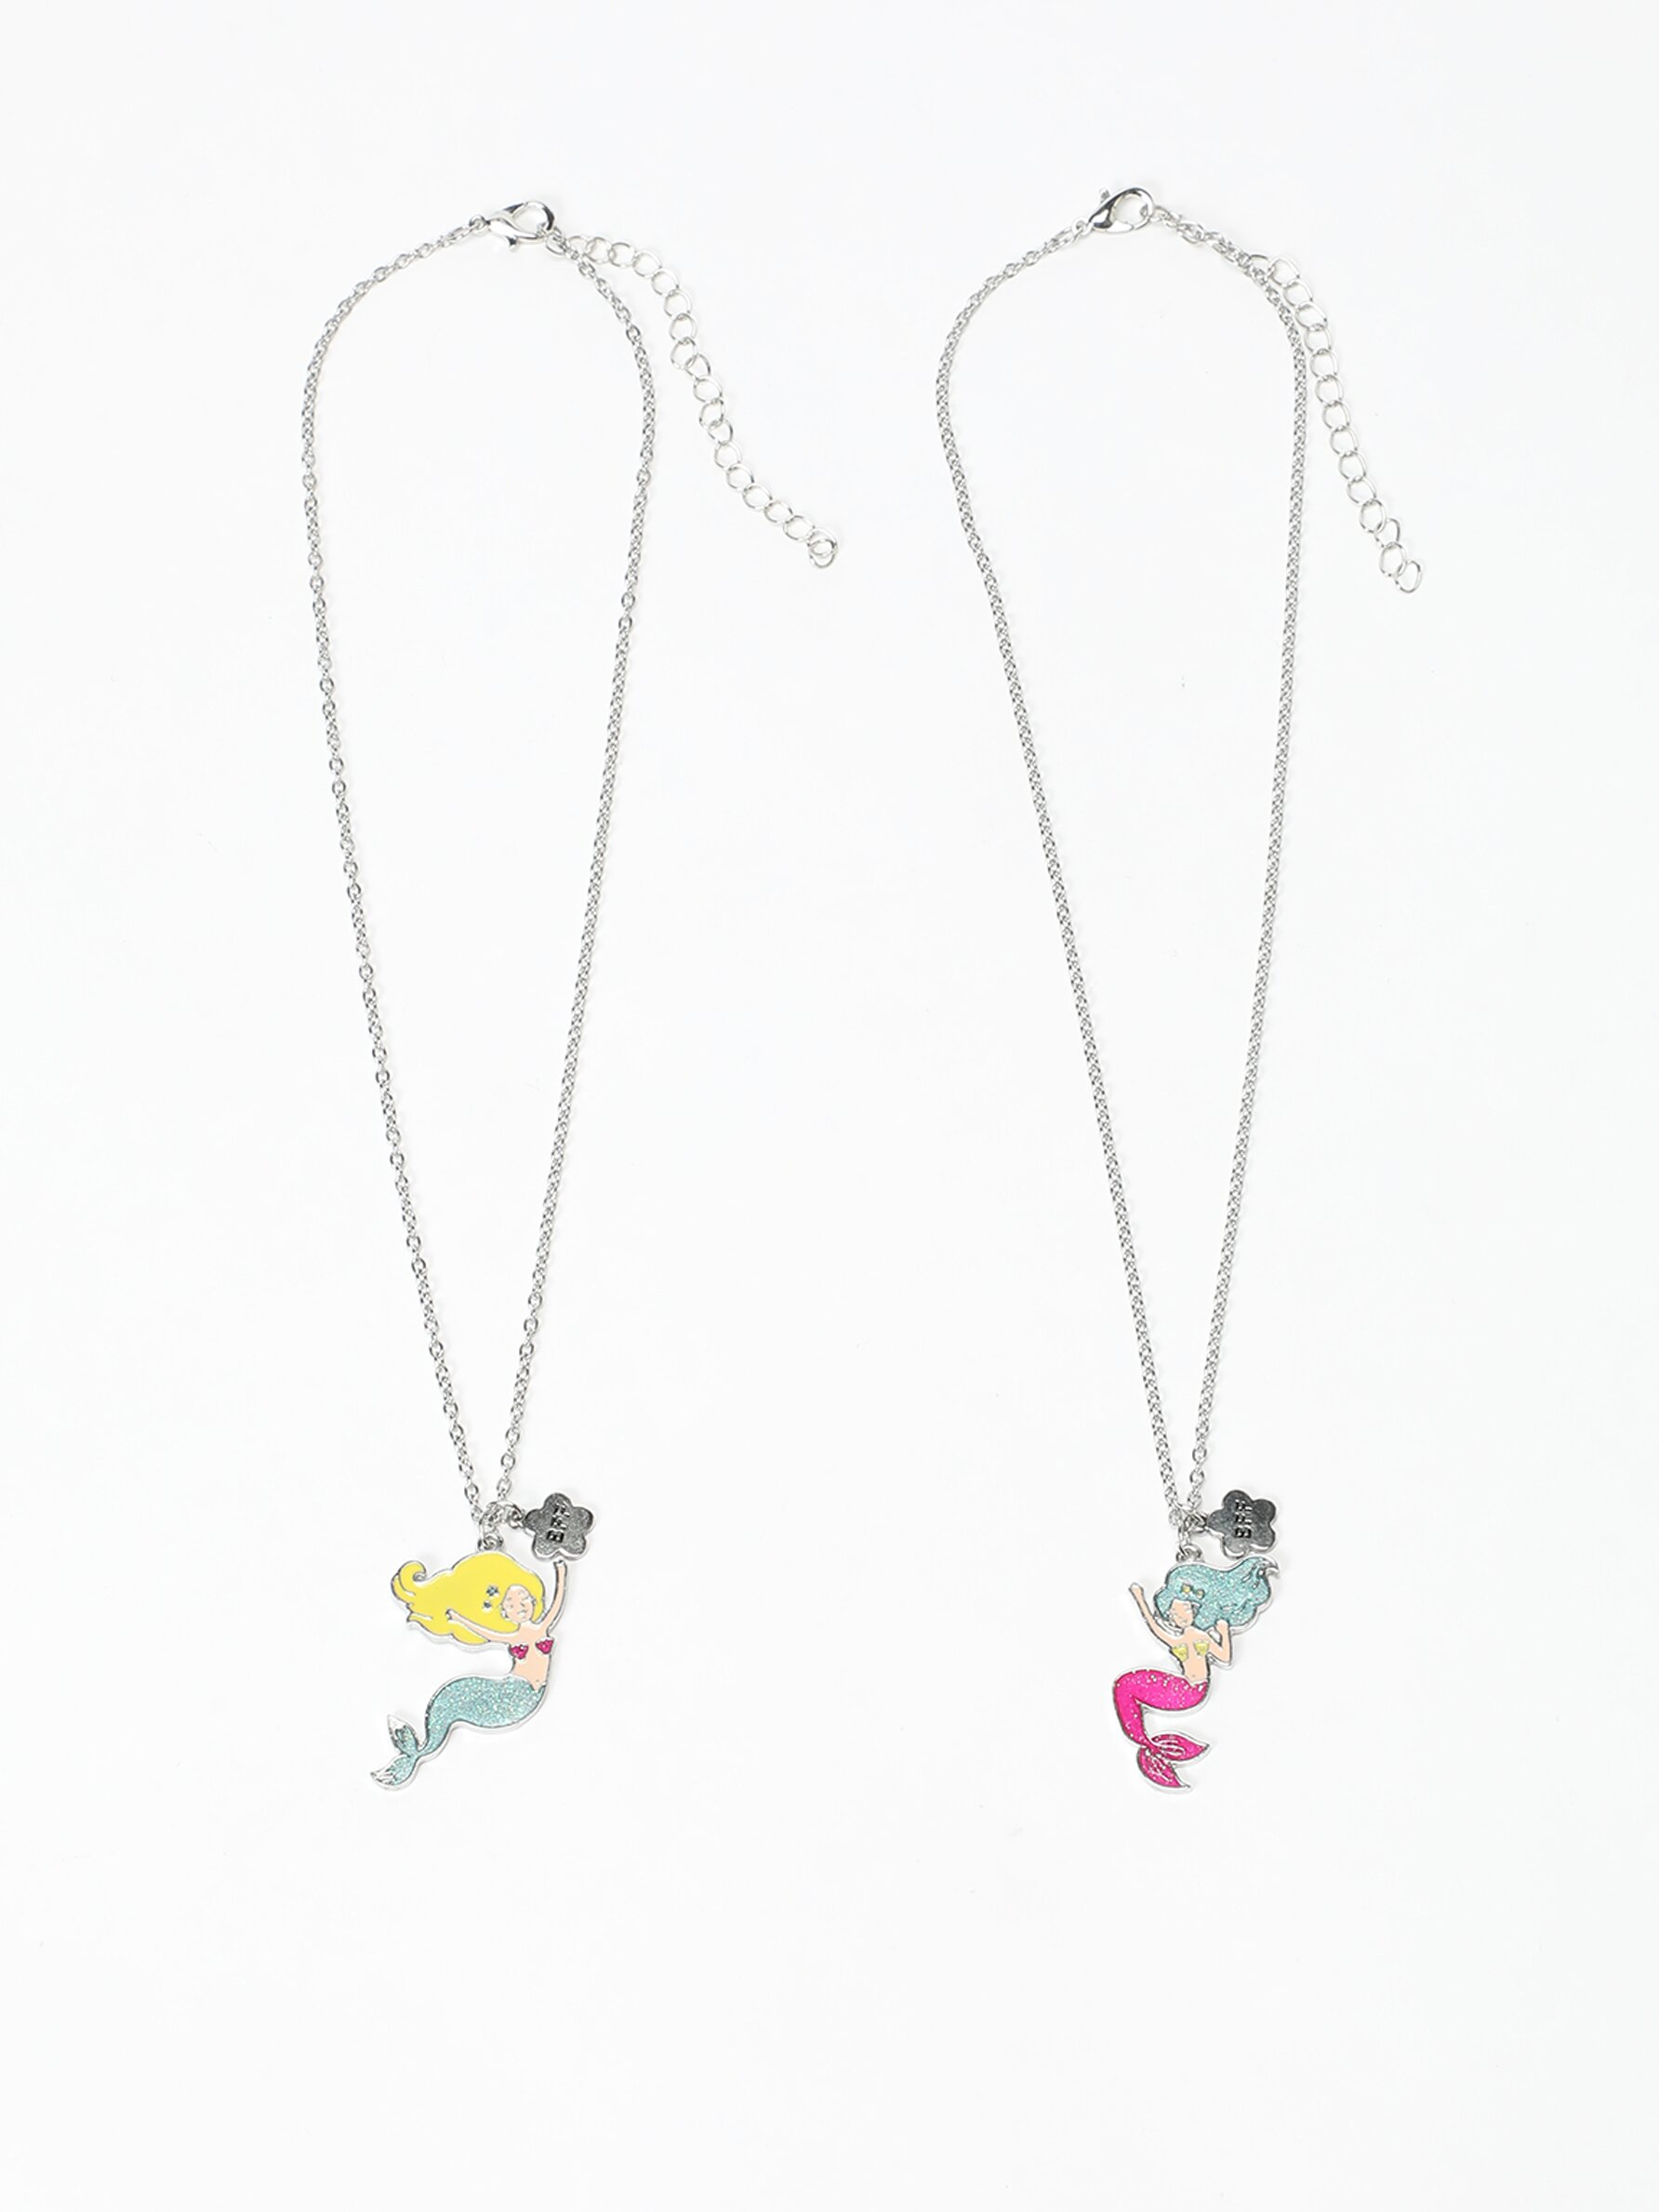 Best Friends Paris Pendant Necklaces - 2 Pack | Claire's